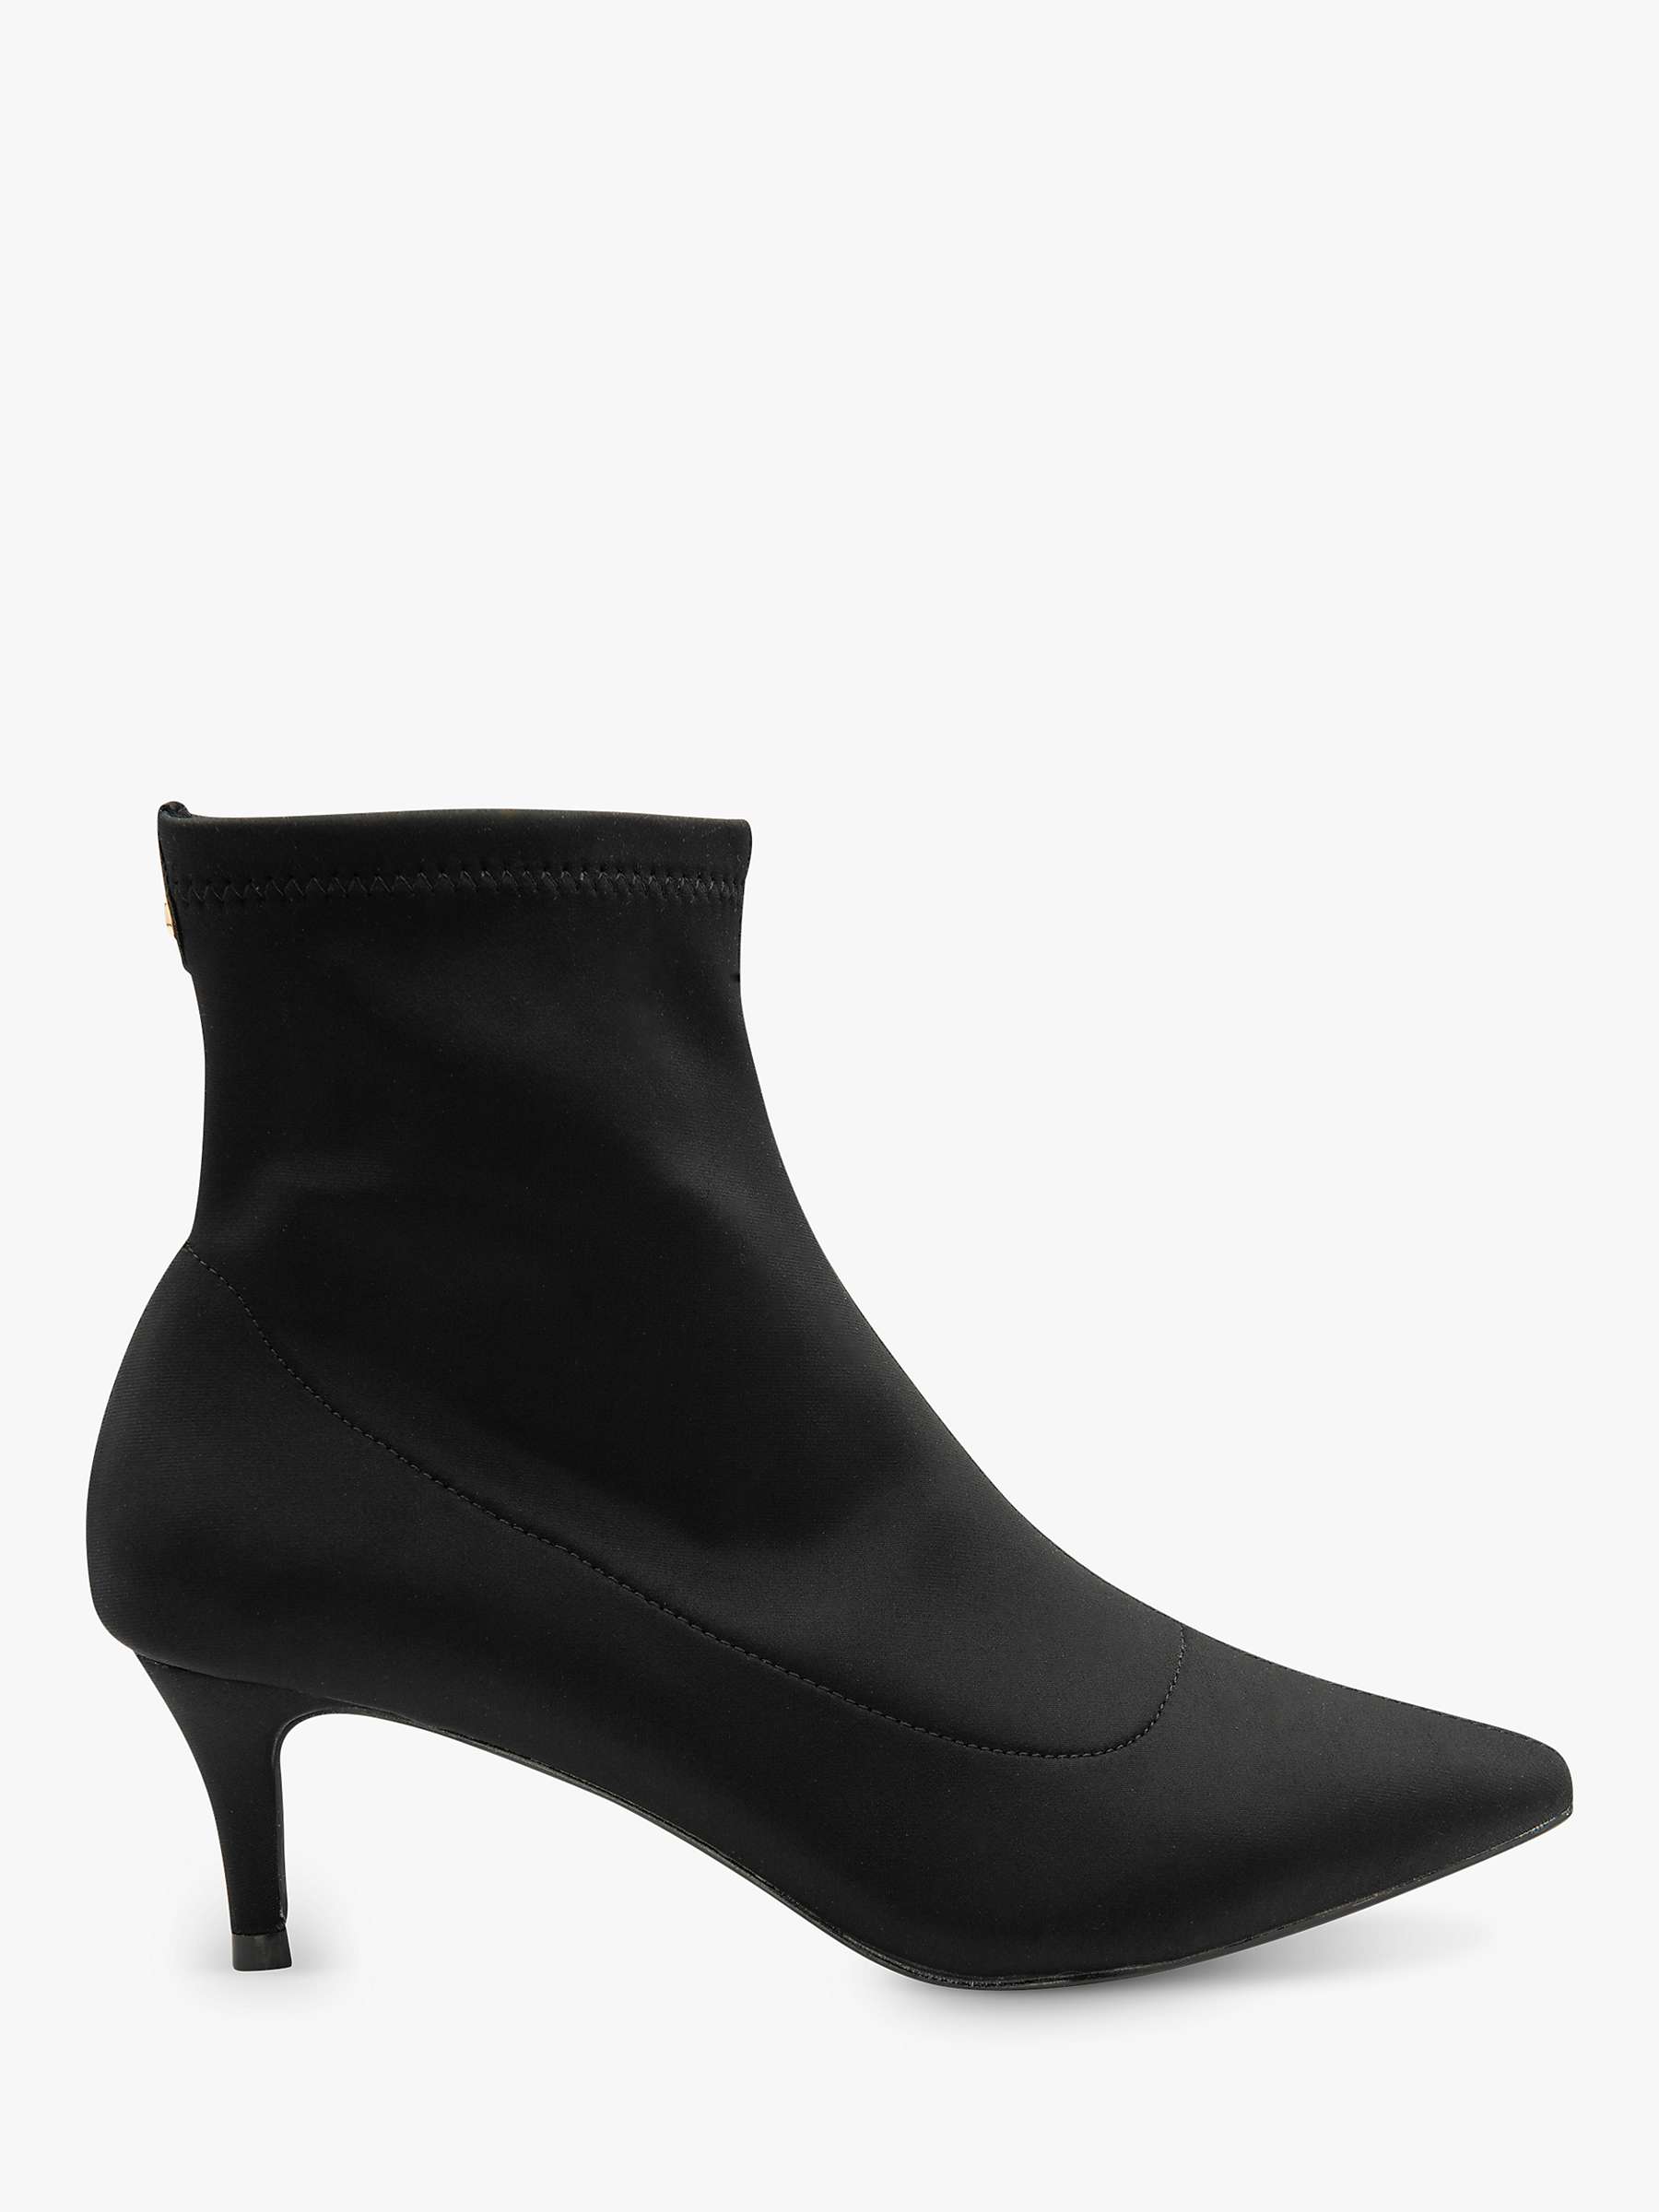 Buy Ravel Madruga Satin Sock Boots, Black Online at johnlewis.com